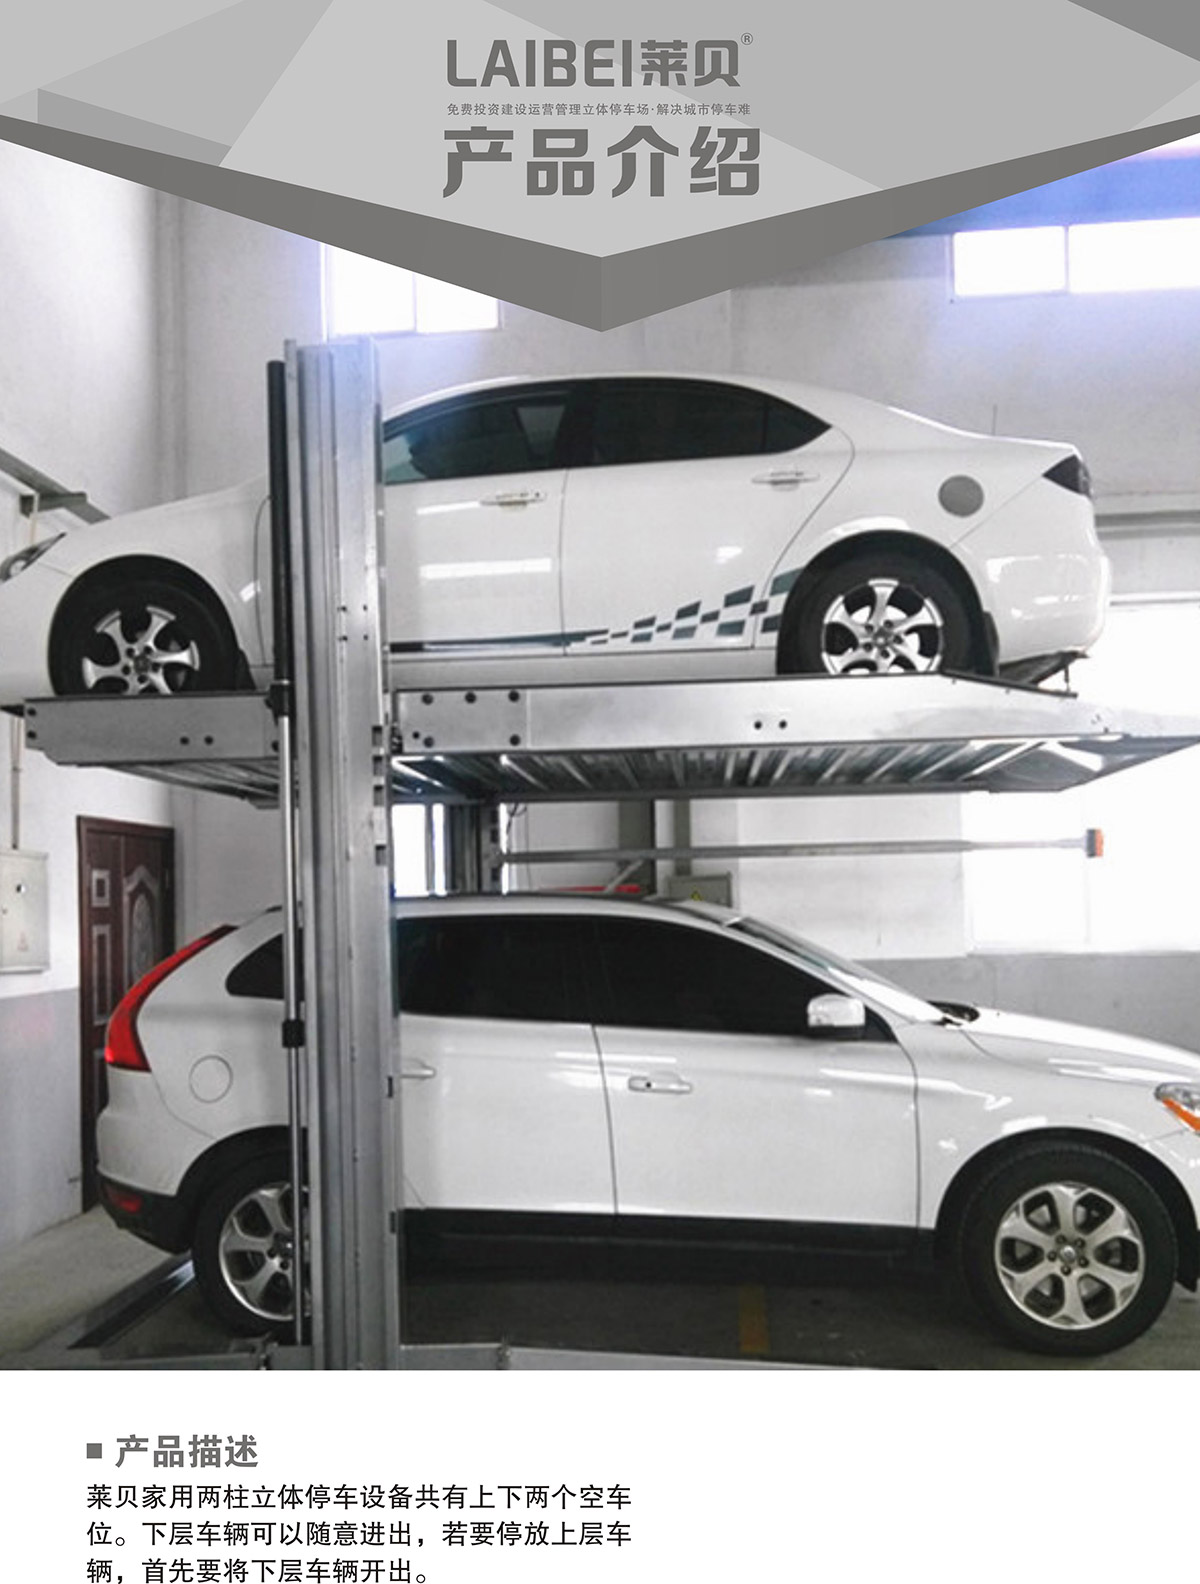 机械停车设备PJS两柱简易升降立体停车产品介绍.jpg